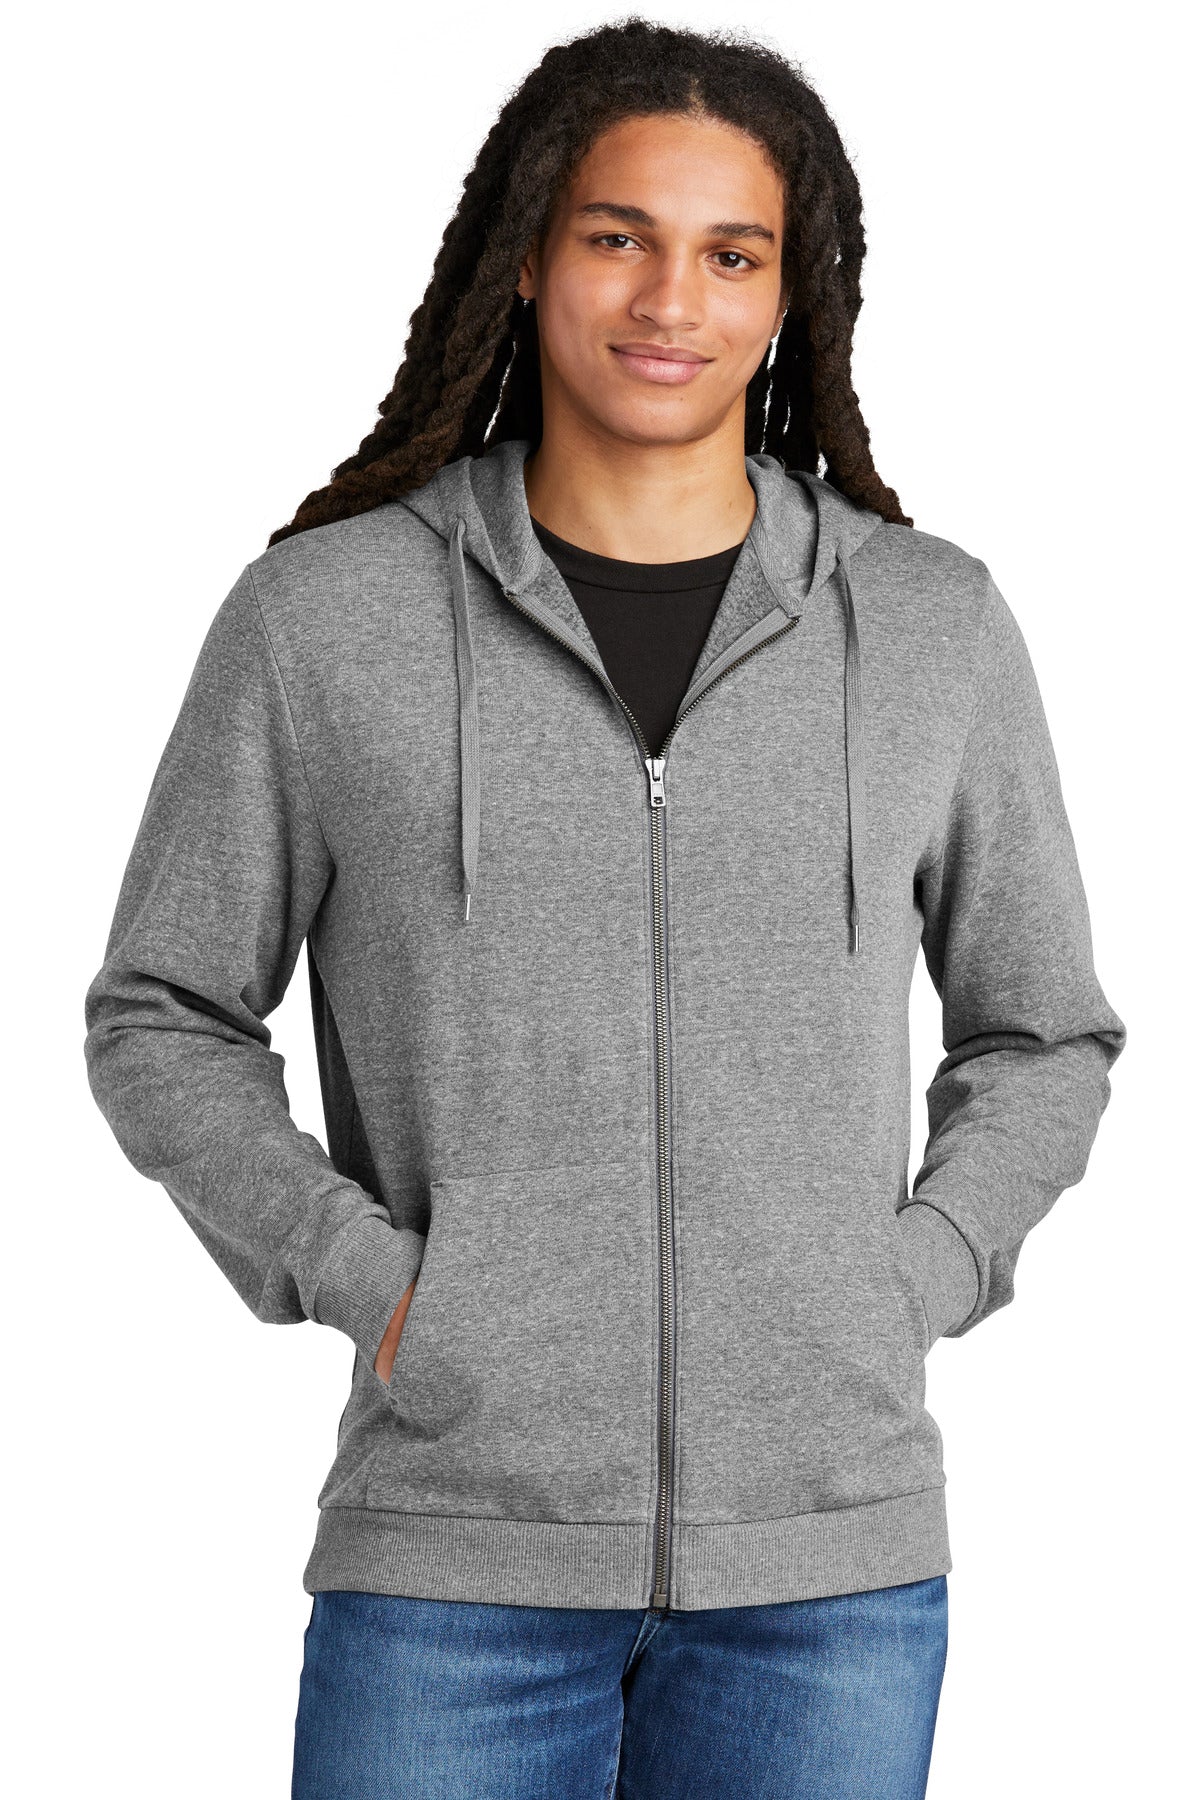 Perfect Tri® Fleece Full-Zip Hoodie DT1302